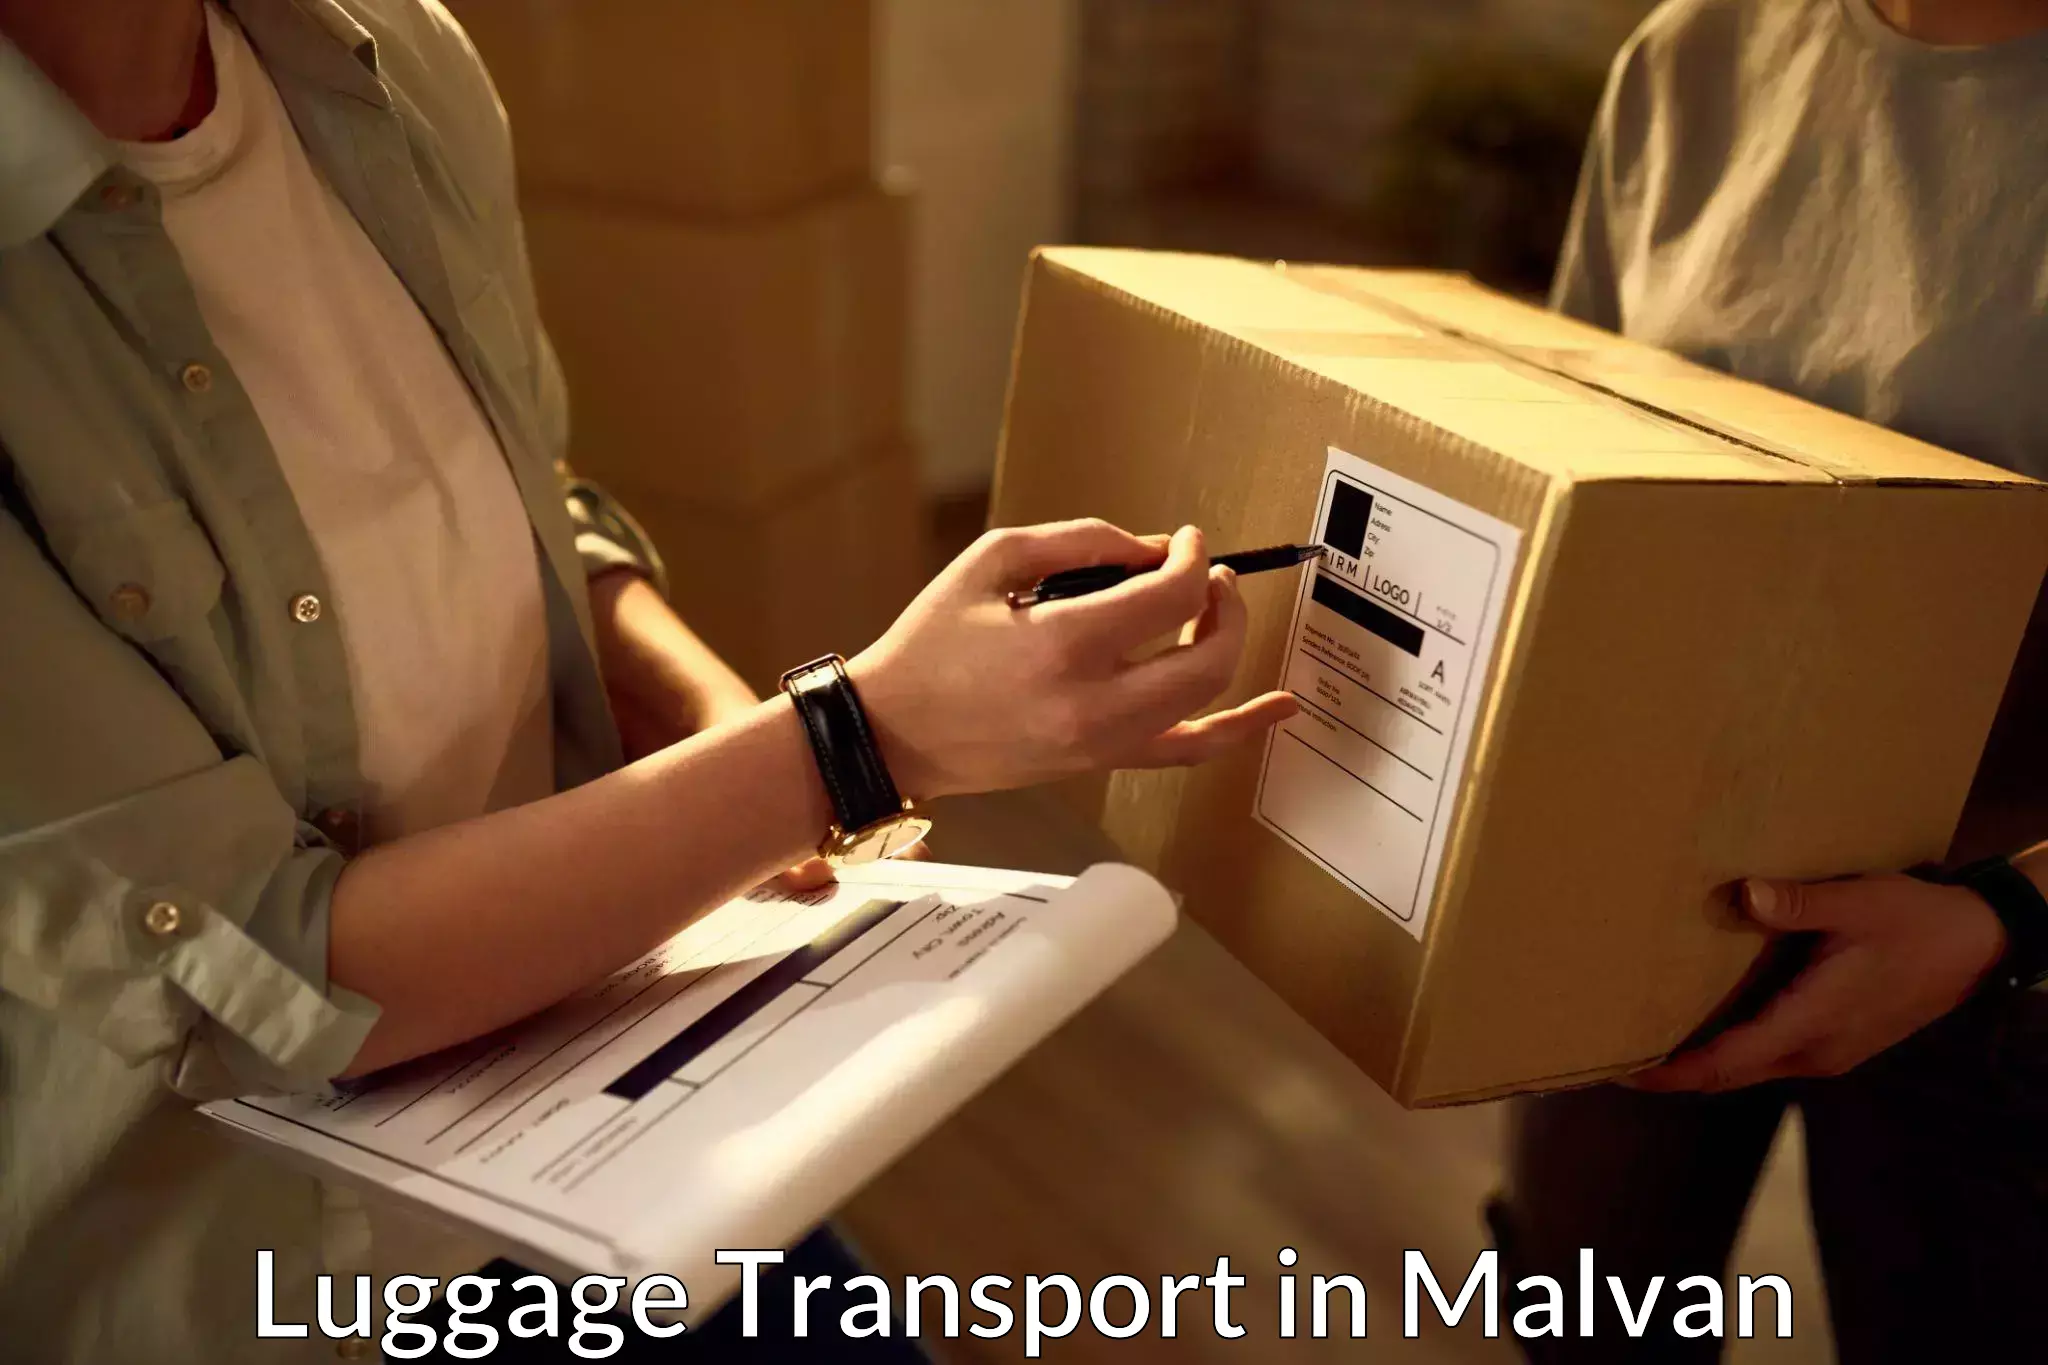 Urban luggage shipping in Malvan